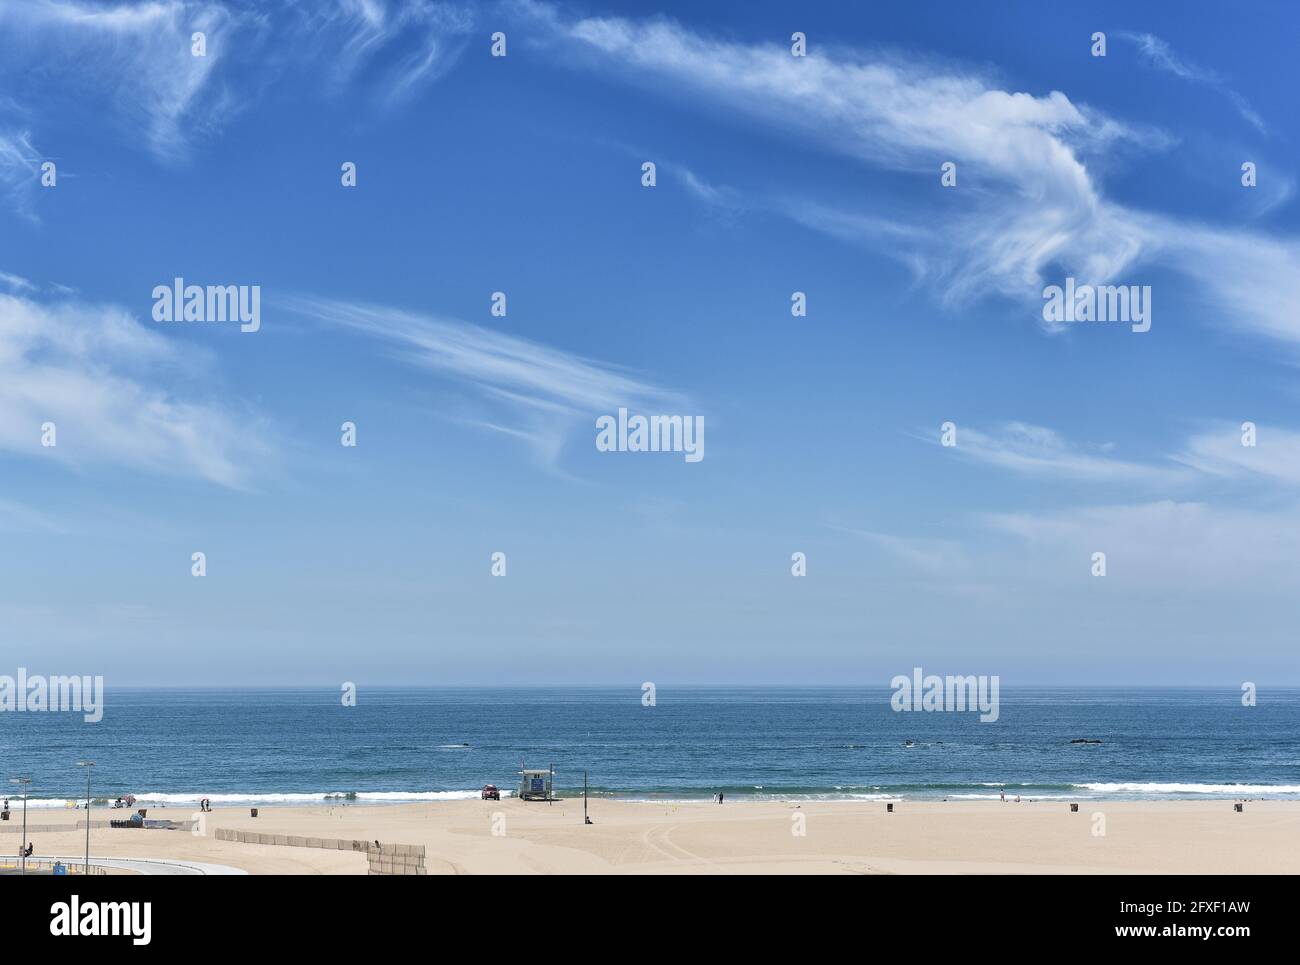 SANTA MONICA, KALIFORNIEN - 25. MAI 2021: Strand an der Santa Monica Bay mit Blick auf den Horizont und den blau-bewölkten Himmel. Stockfoto